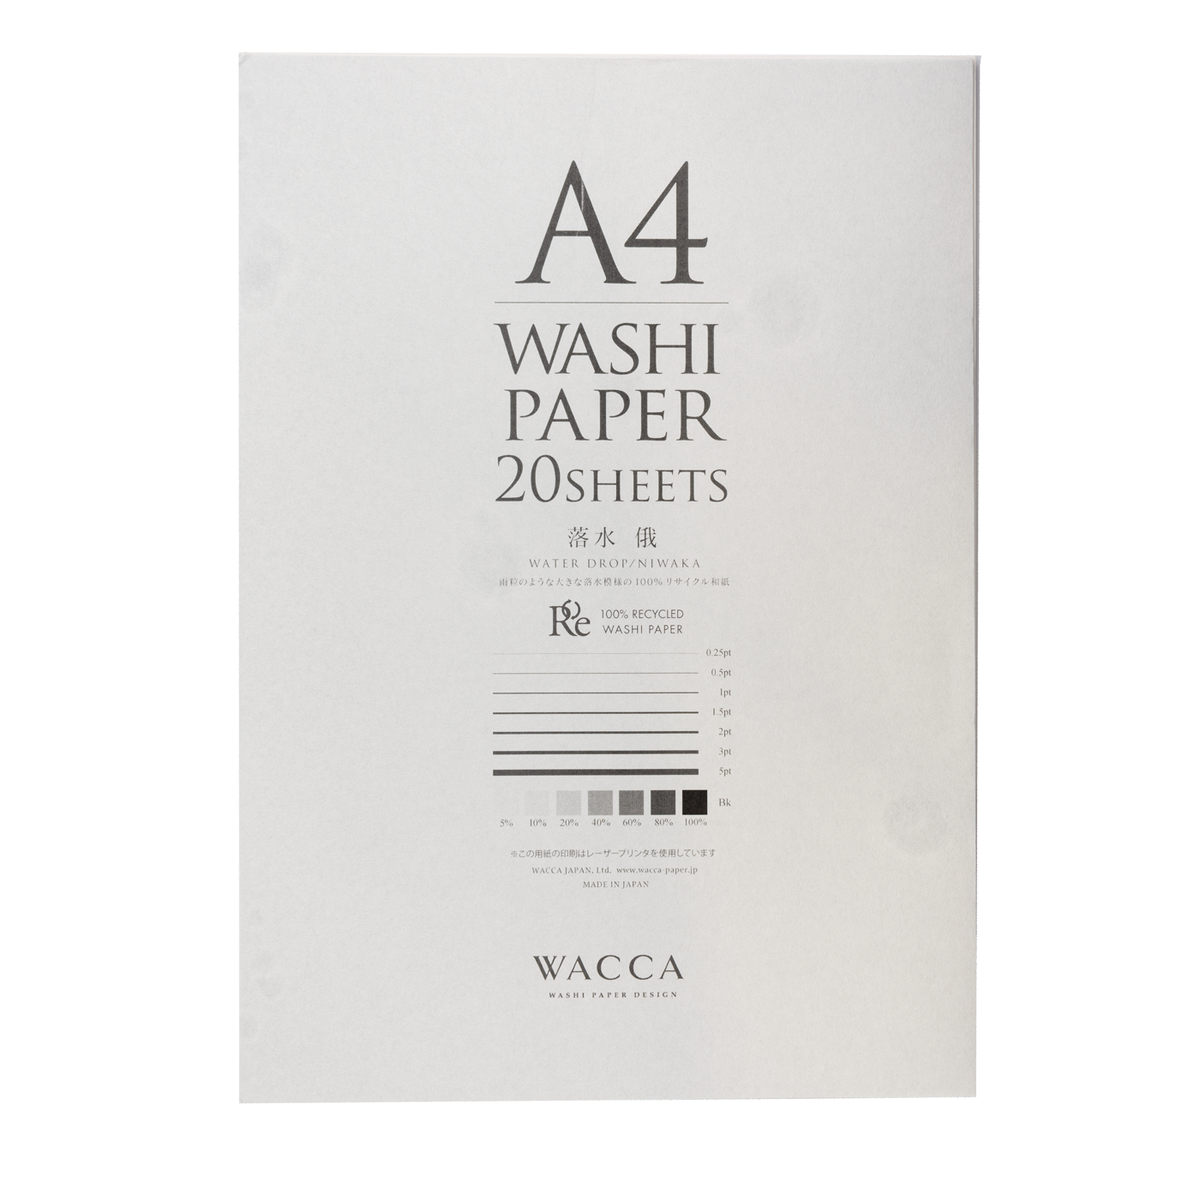 WACCO Washi Paper - Water Drop NIWAKA - A4